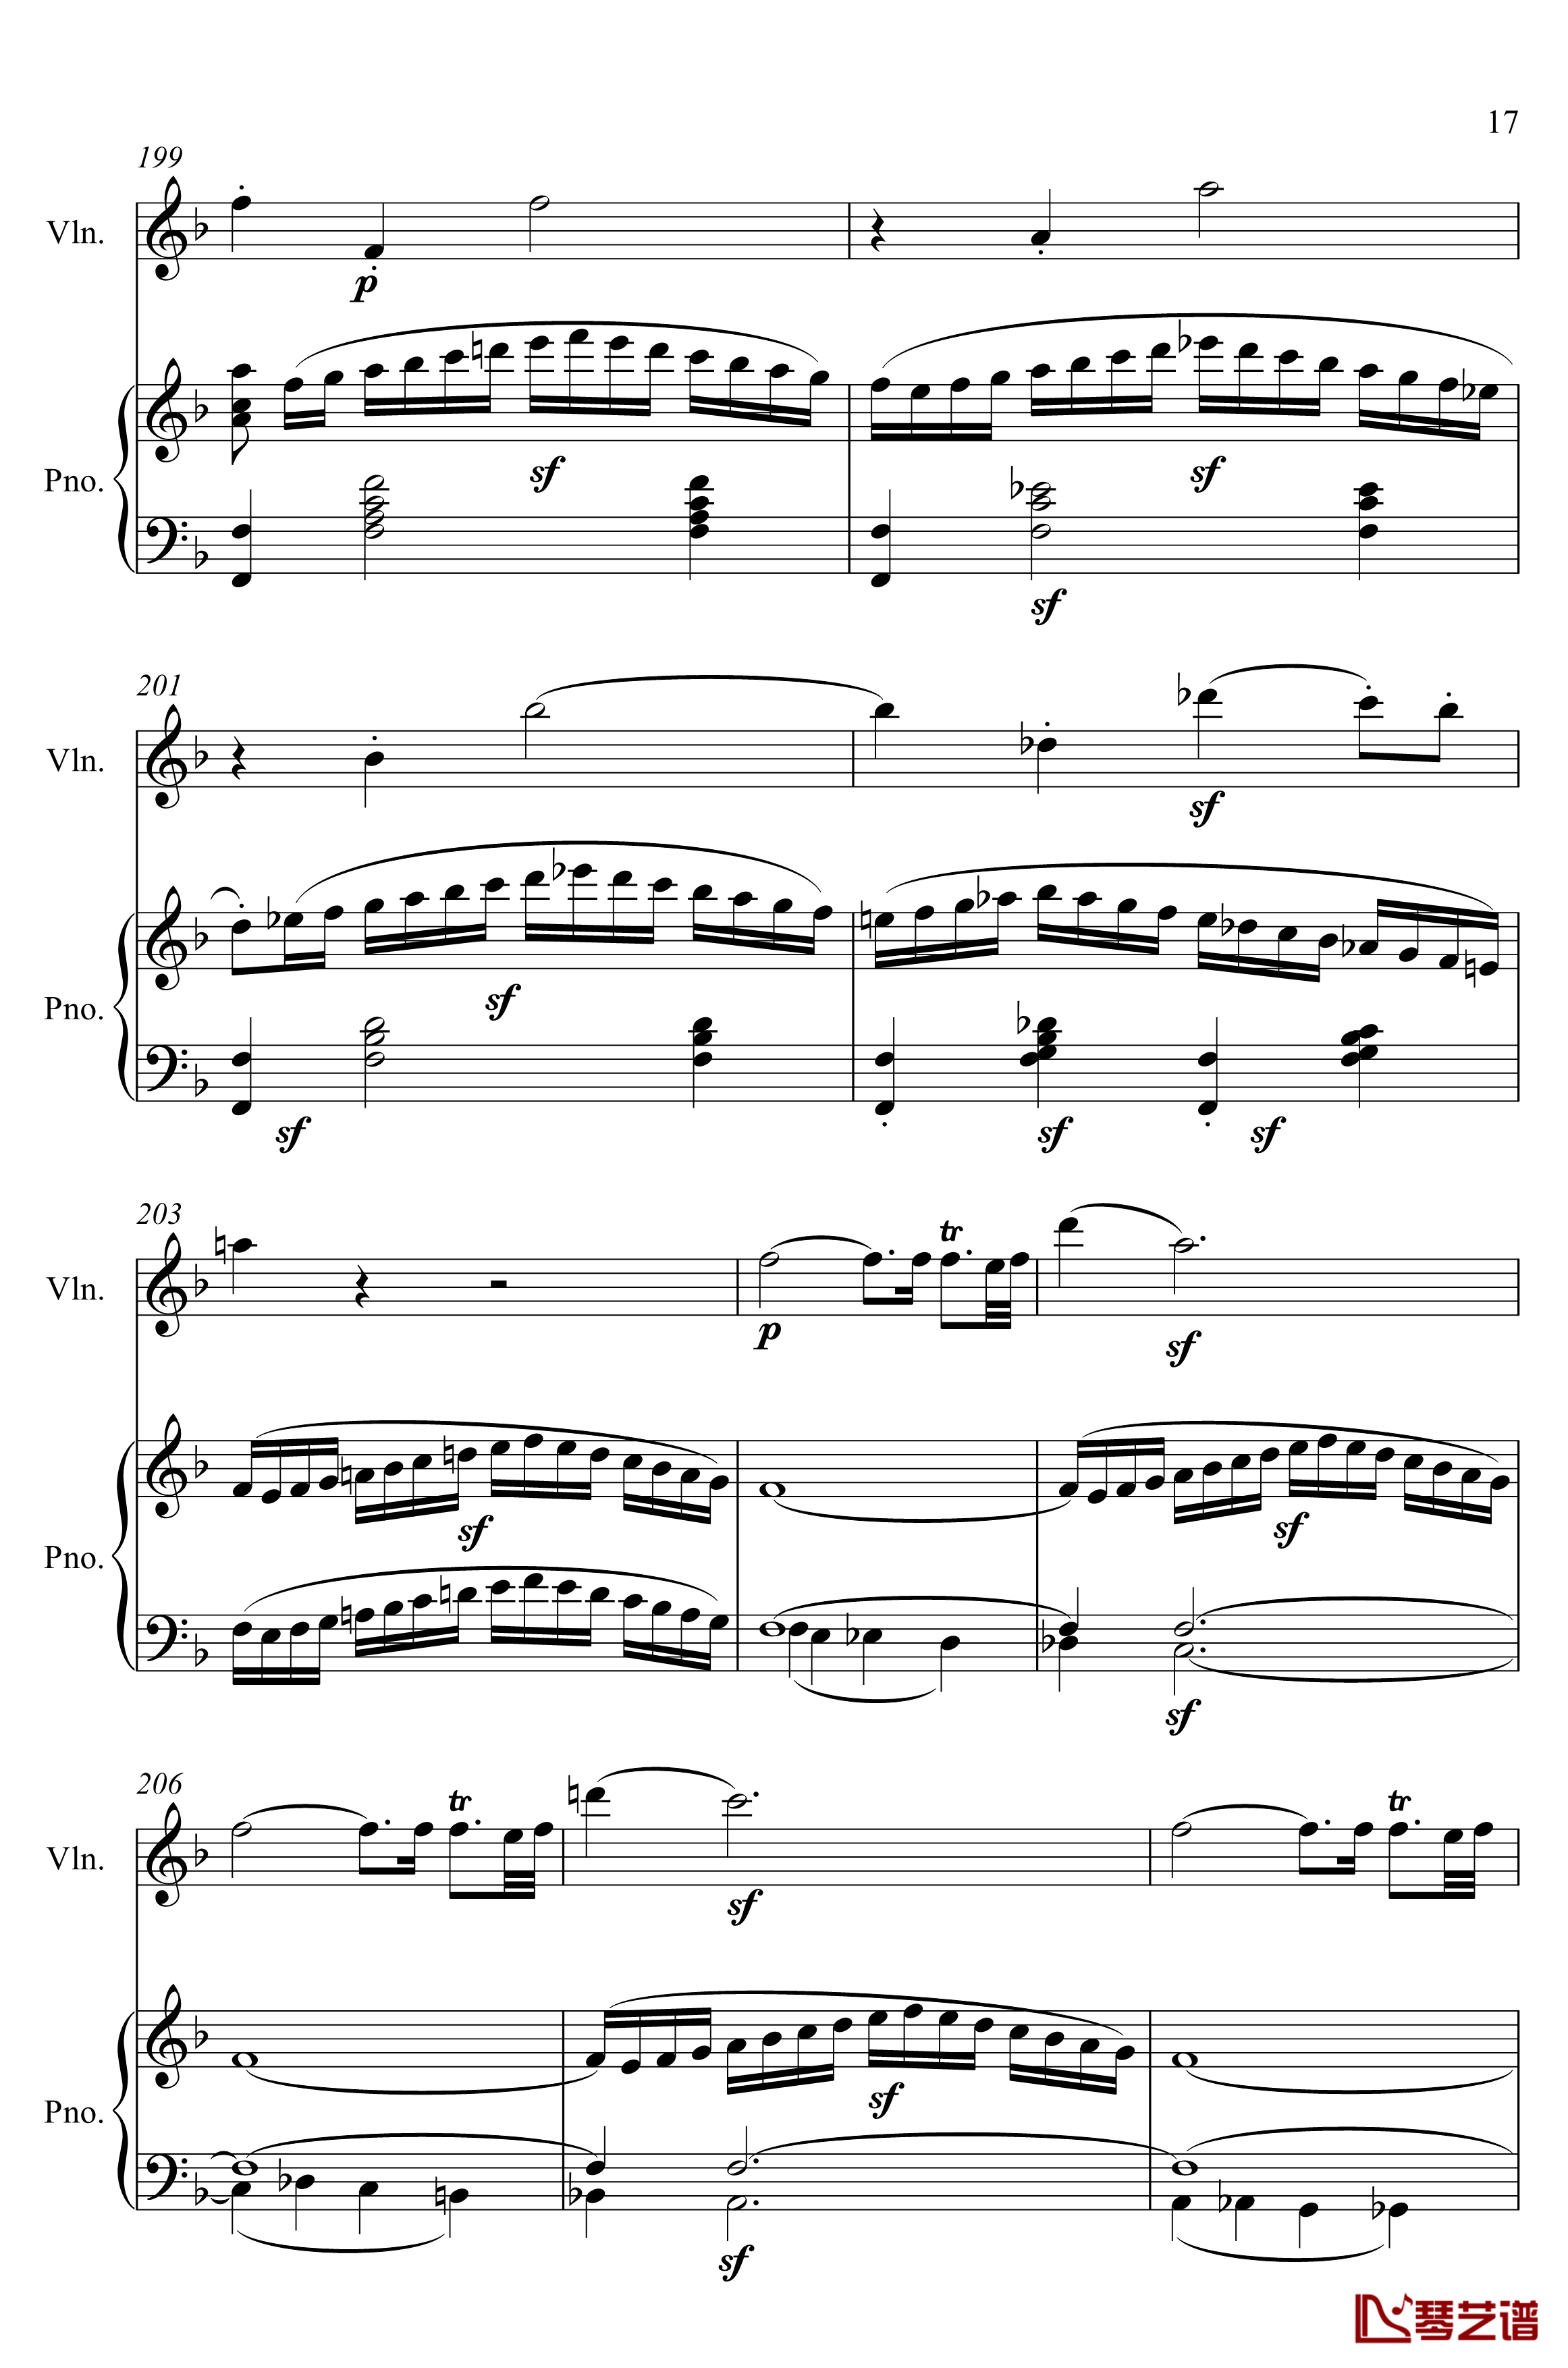 第5小提琴与钢琴奏鸣曲钢琴谱-第一乐章钢琴谱-贝多芬-beethoven17